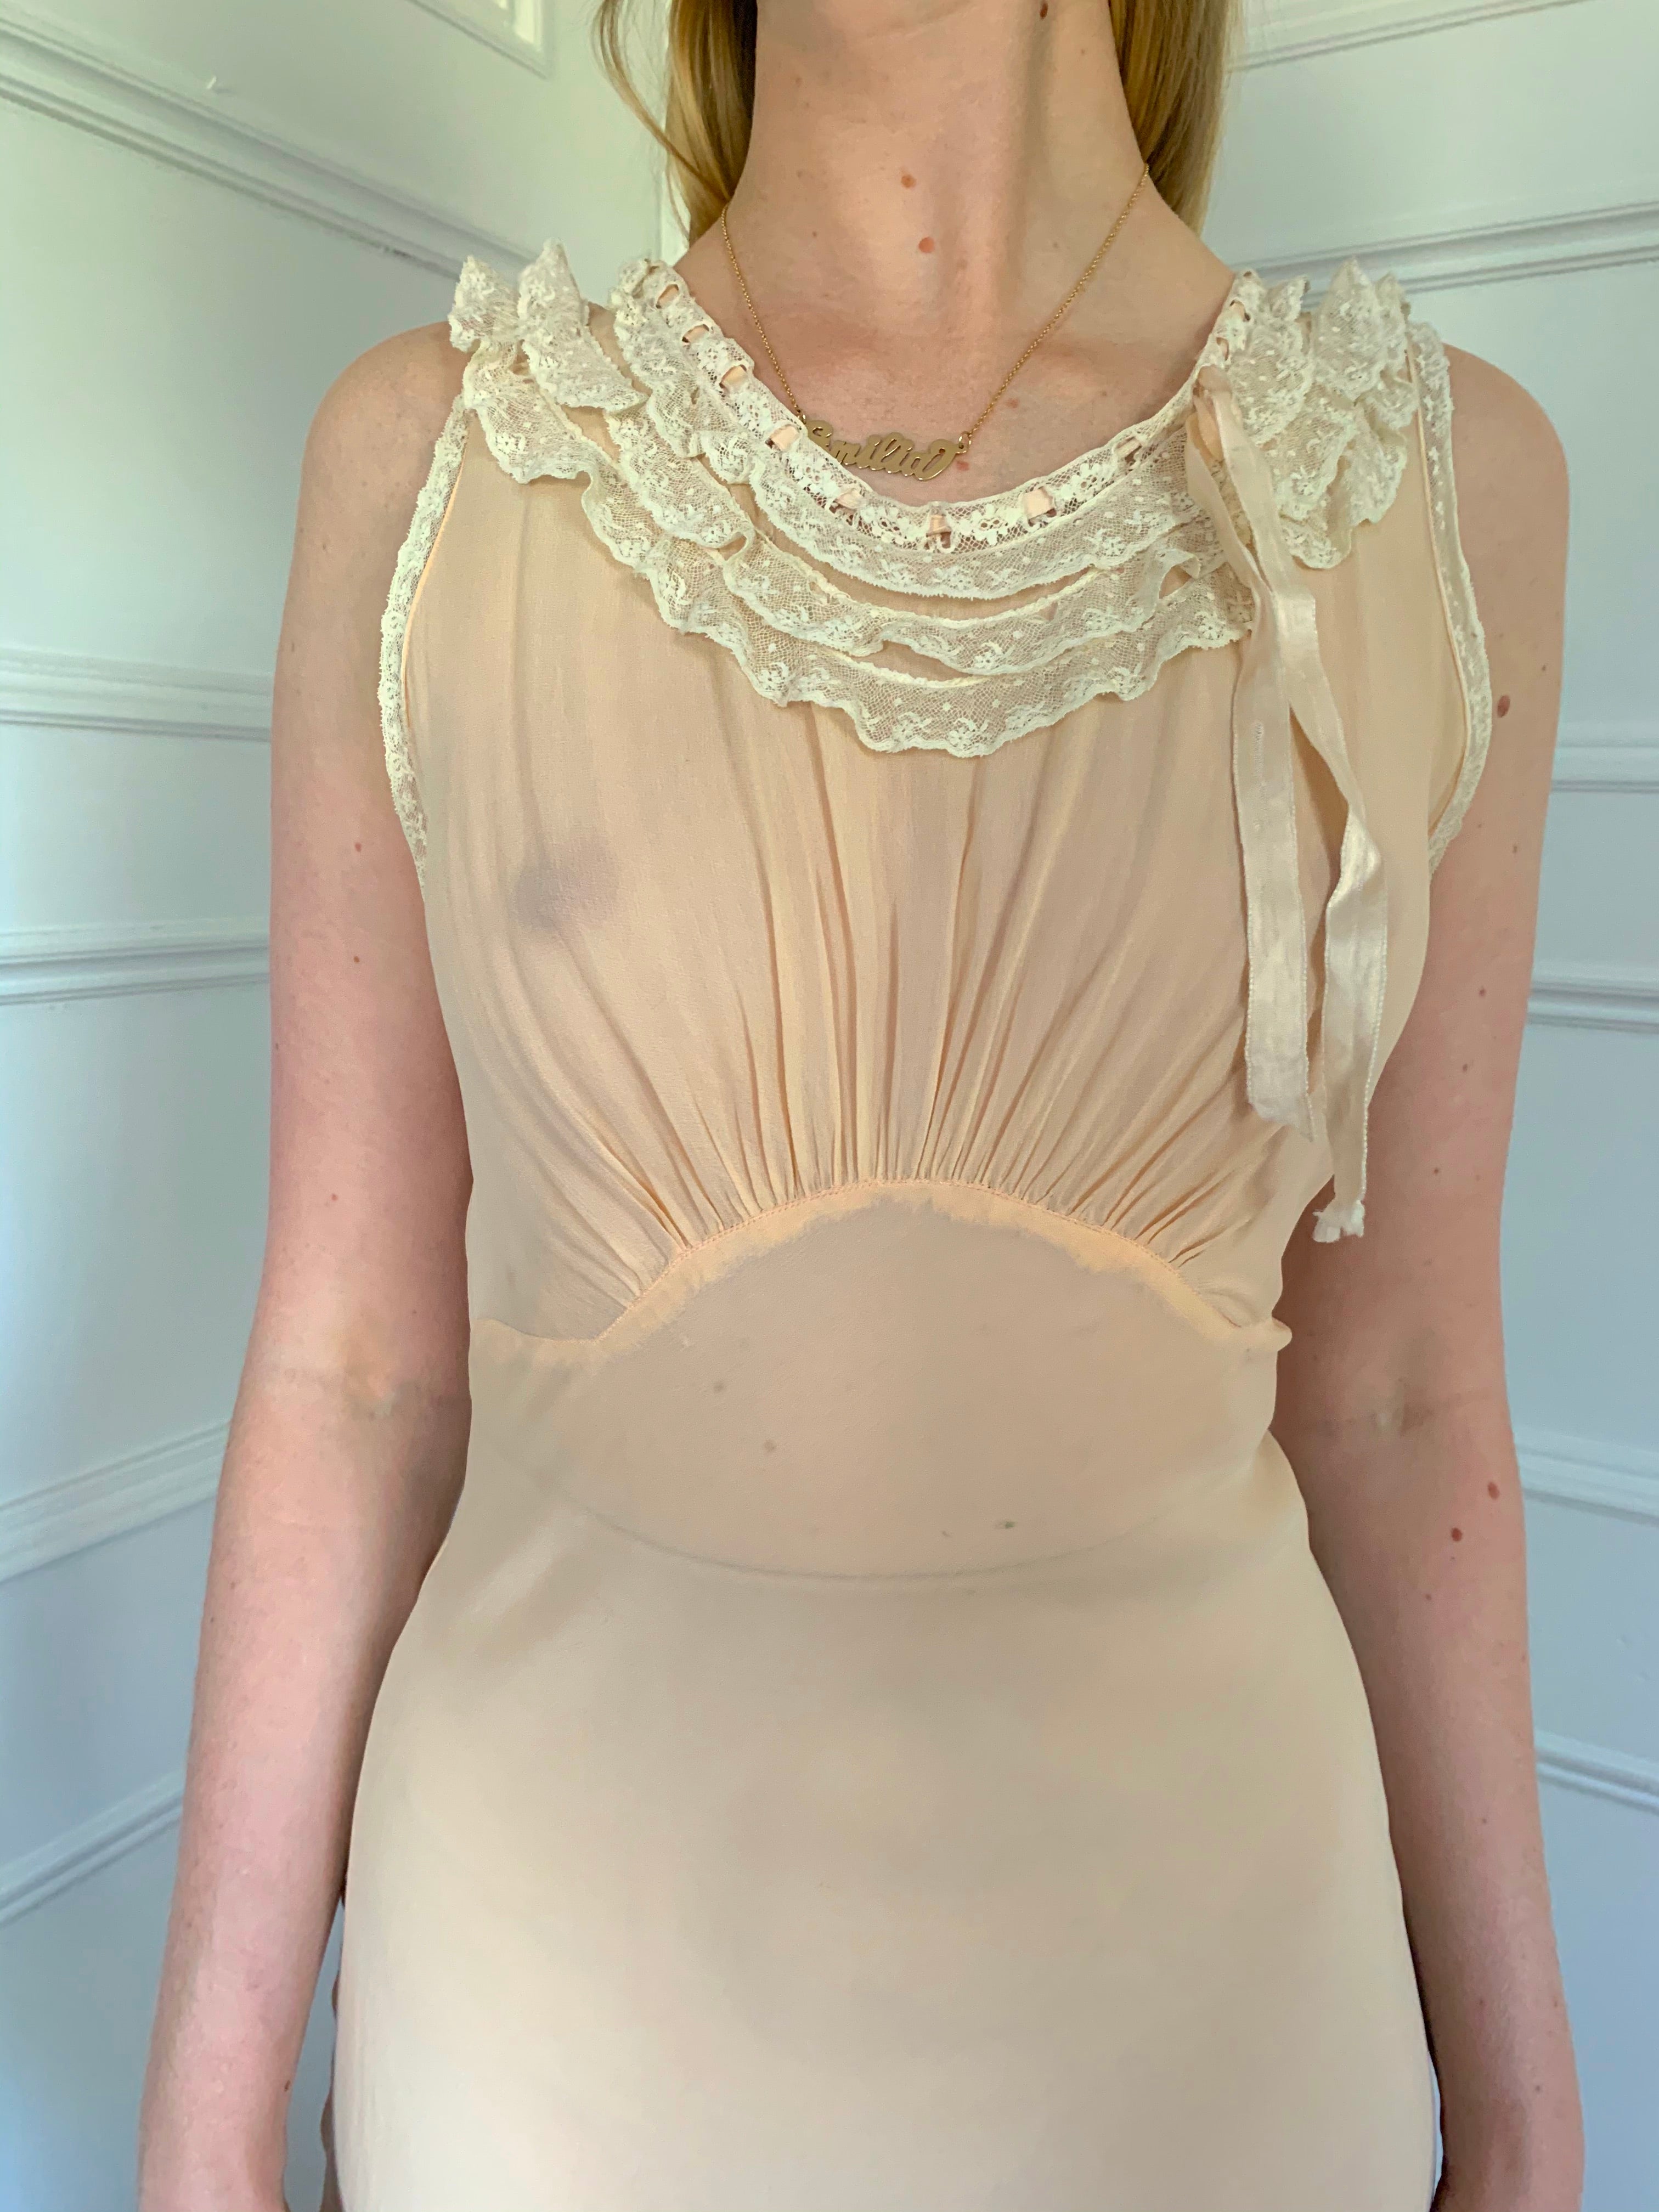 Pale Pink Chiffon Dress with White Lace